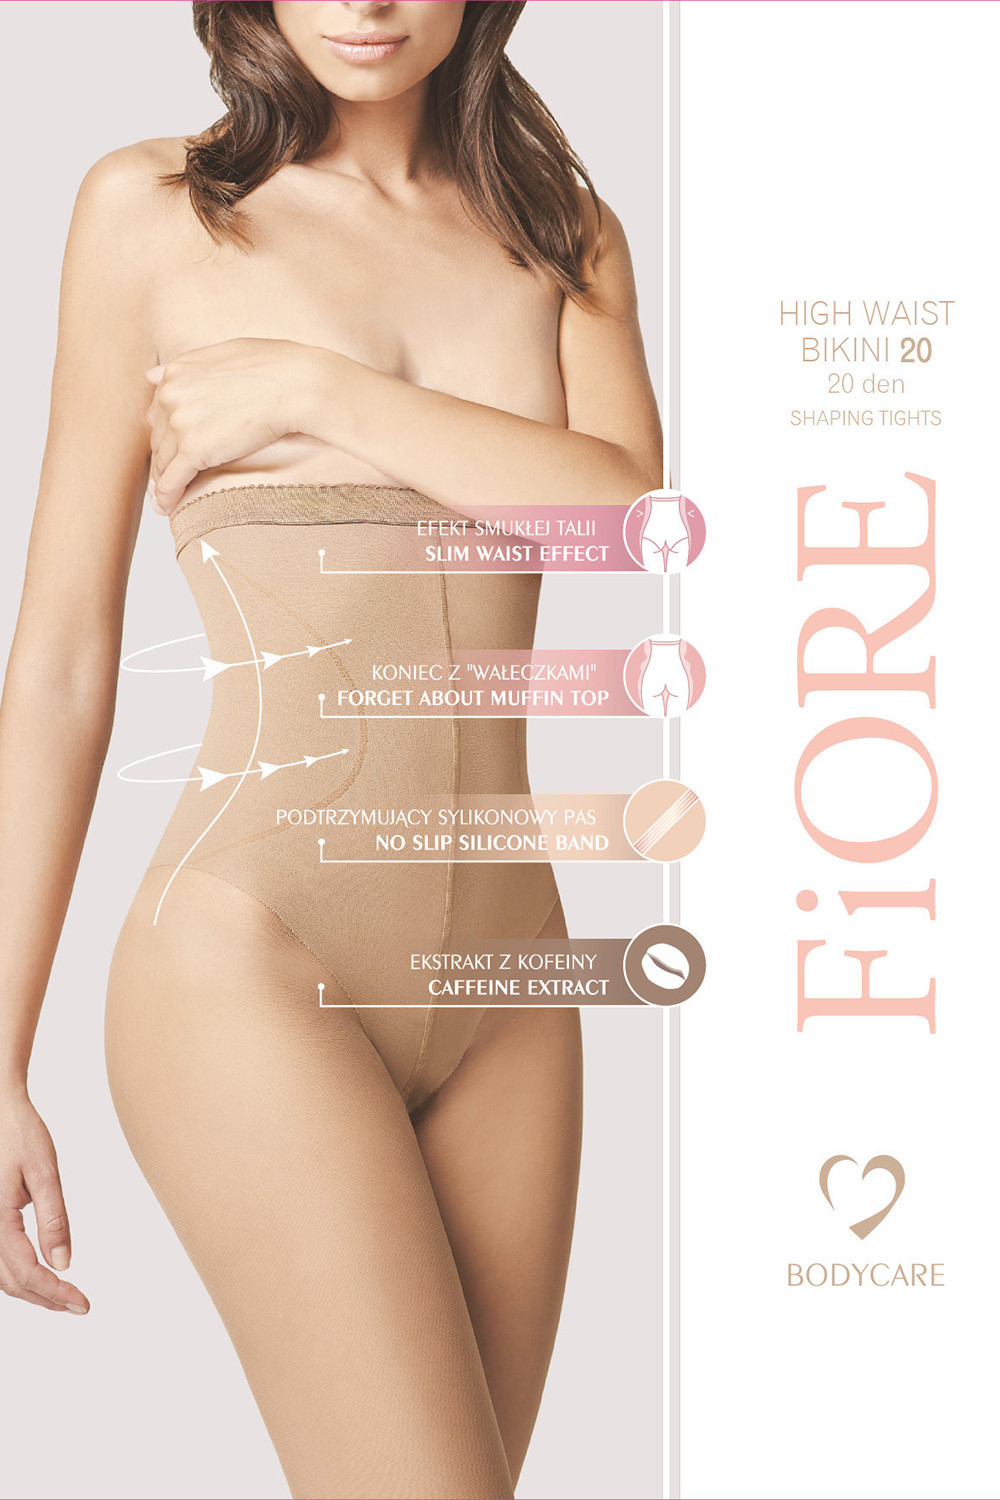 Fiore High Waist Bikini 20 den M5218 kolor:light natural 2-S